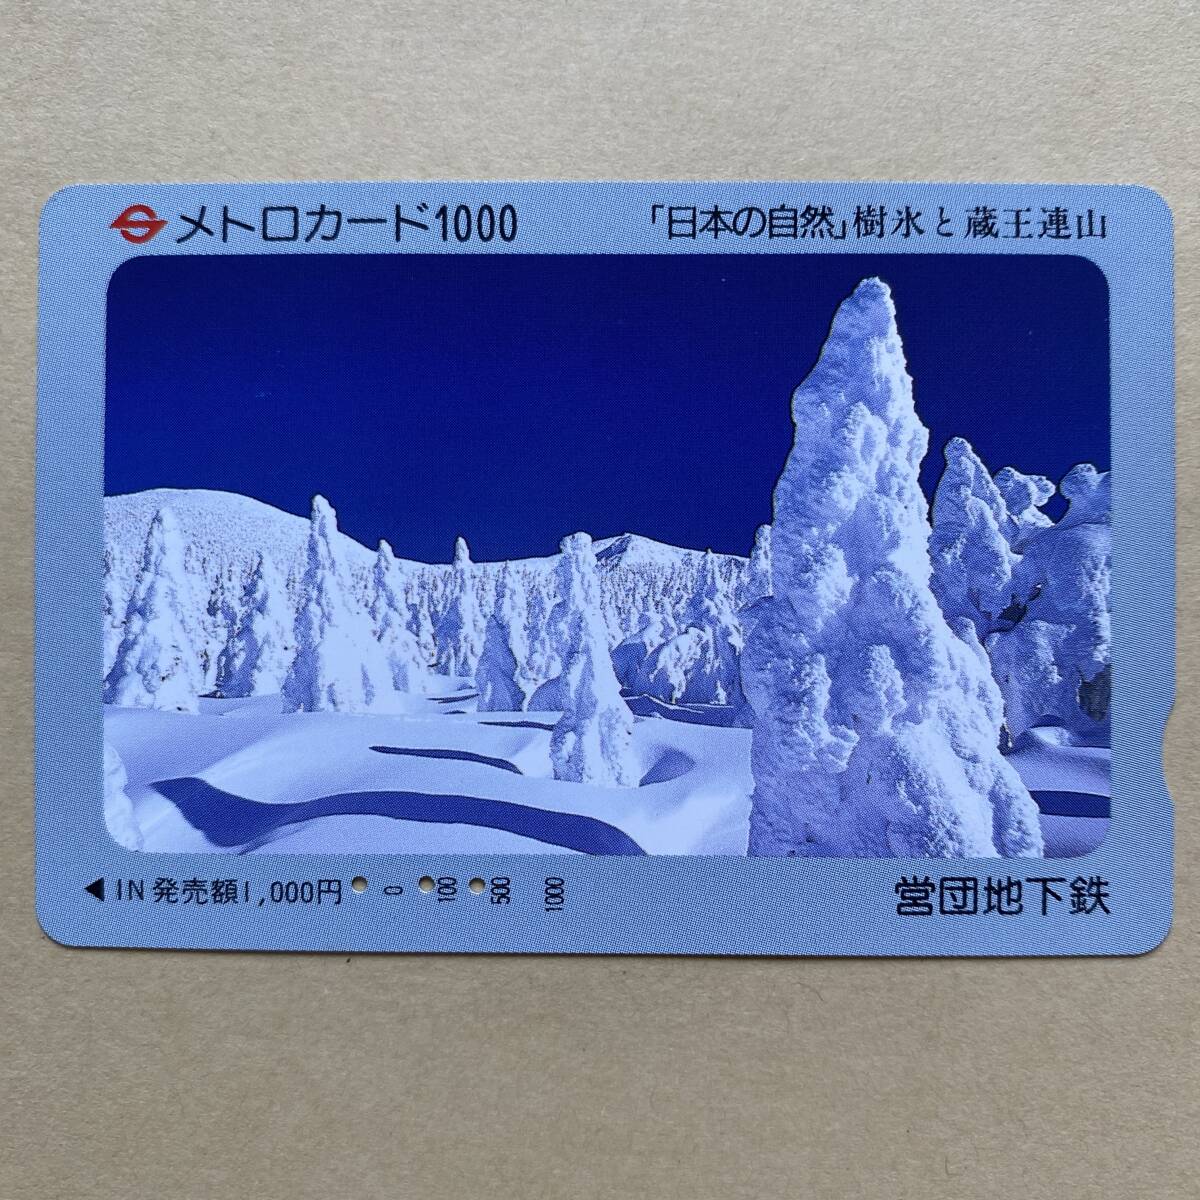 【使用済】 メトロカード 営団地下鉄 東京メトロ 「日本の自然」樹氷と蔵王連山_画像1